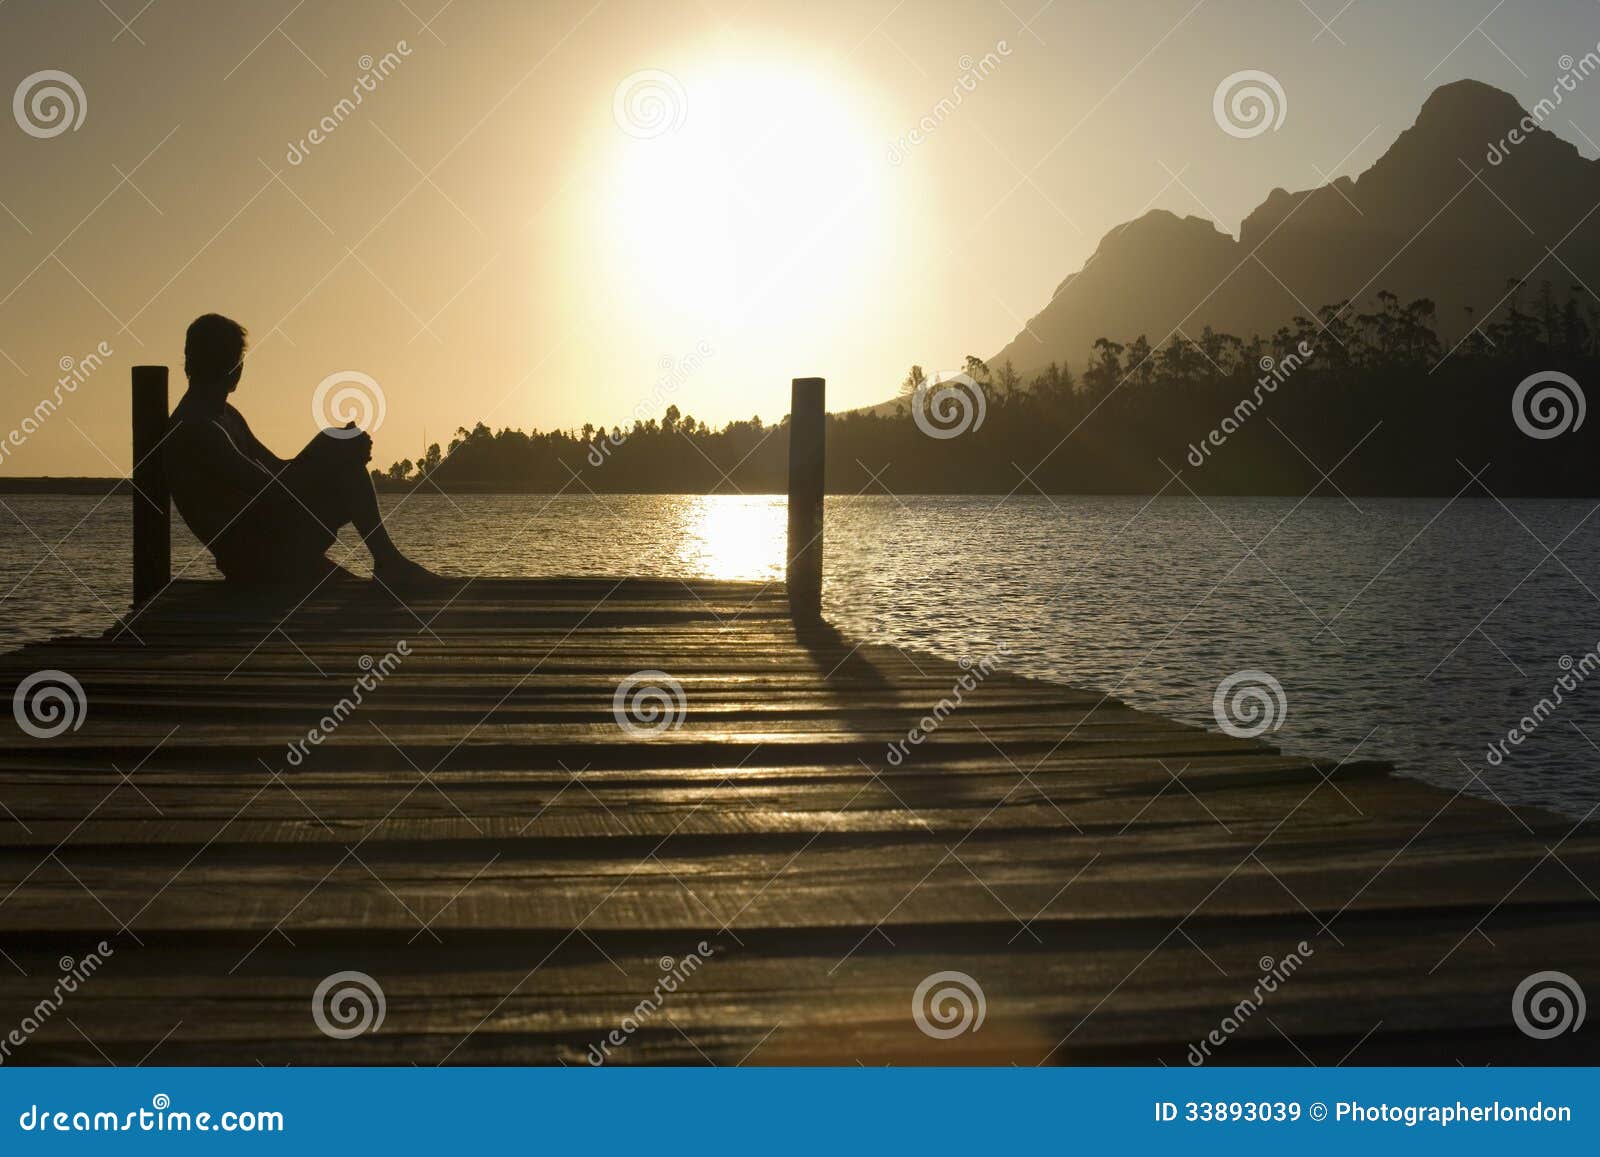 man sitting on dock by lake